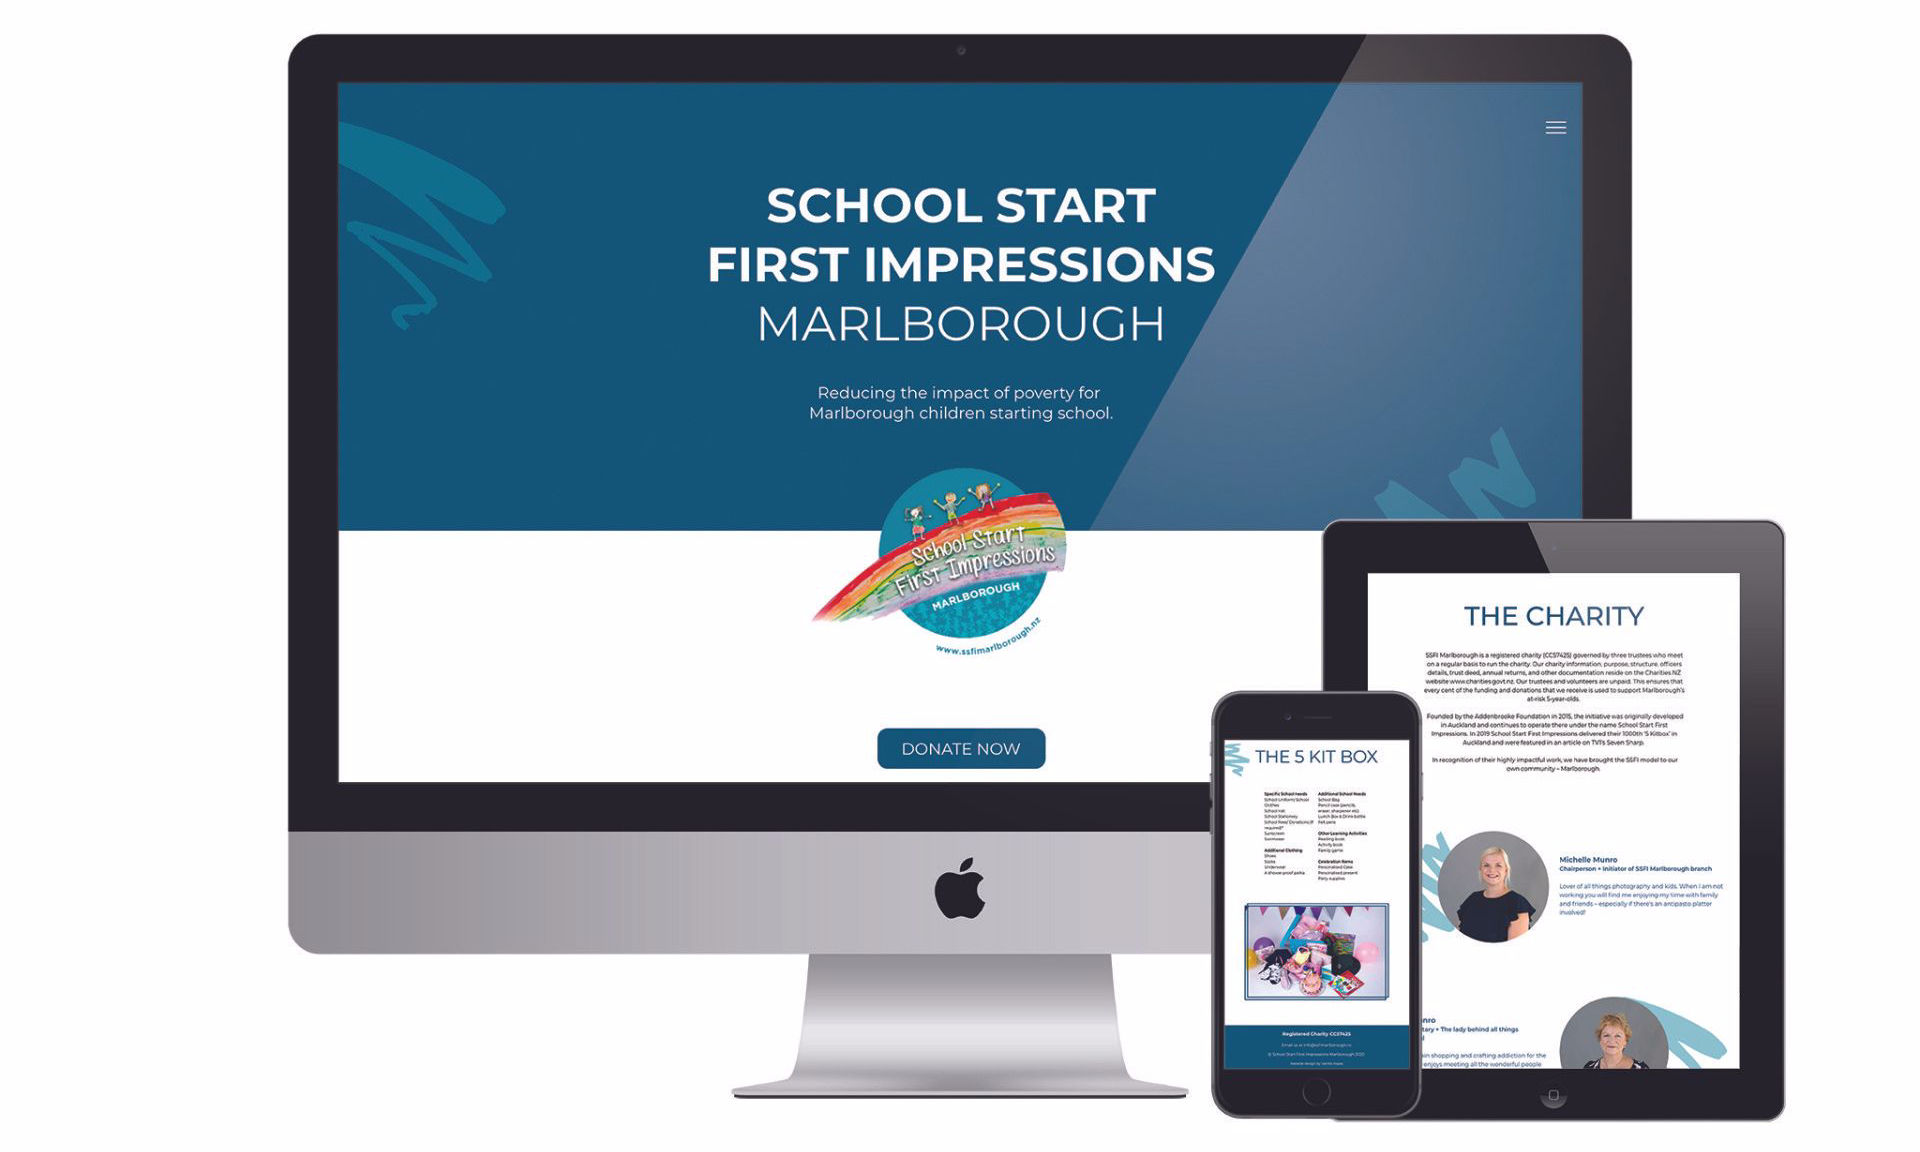 School Start First Impressions Marlborough website designed by Vanilla Hayes creative graphic design  studio in Blenheim, Marlborough, New Zealand